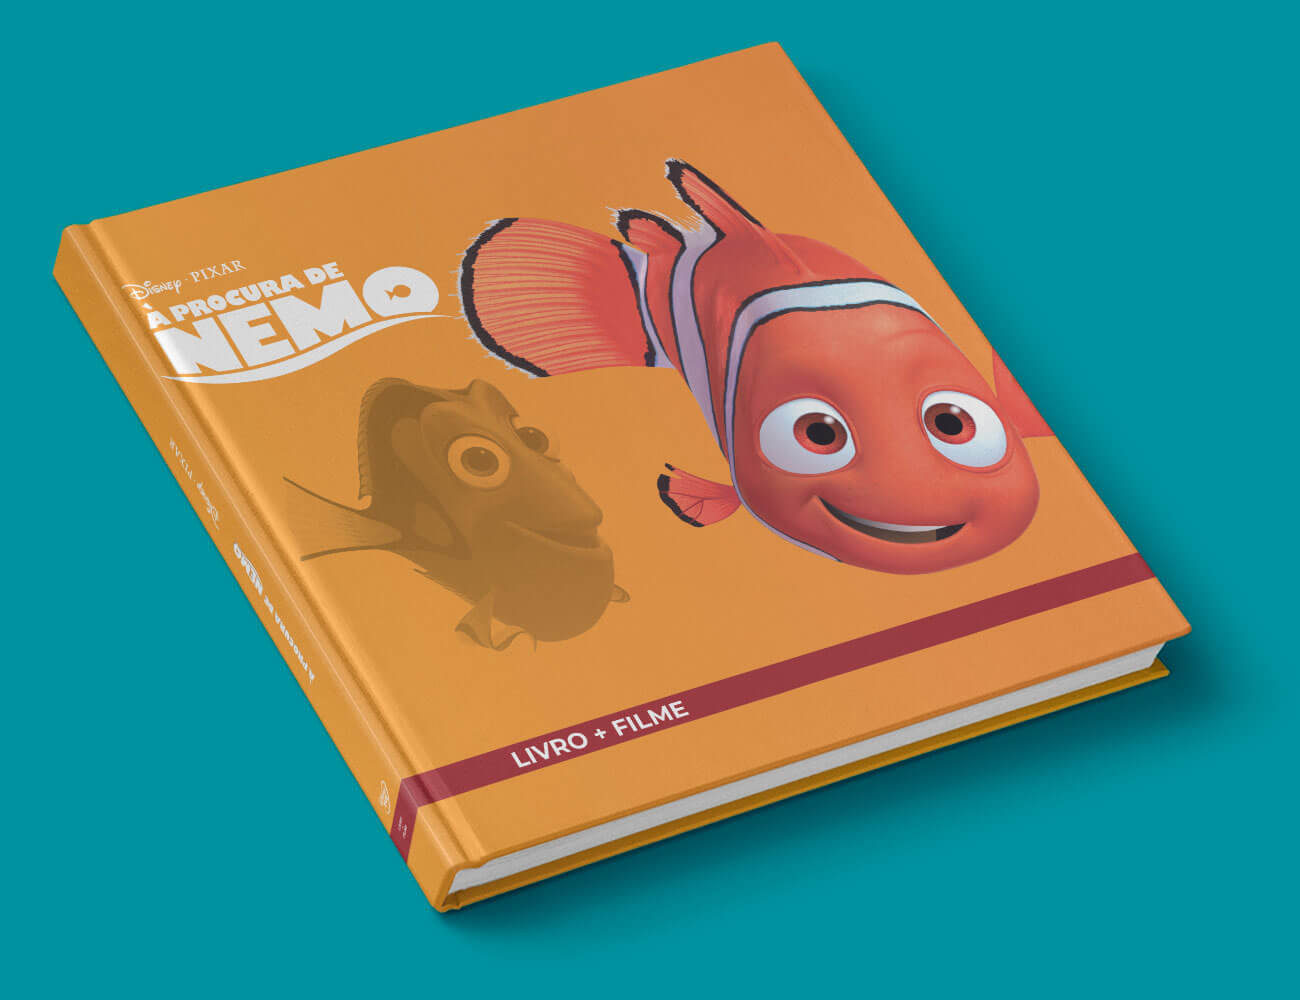 À procura de Nemo